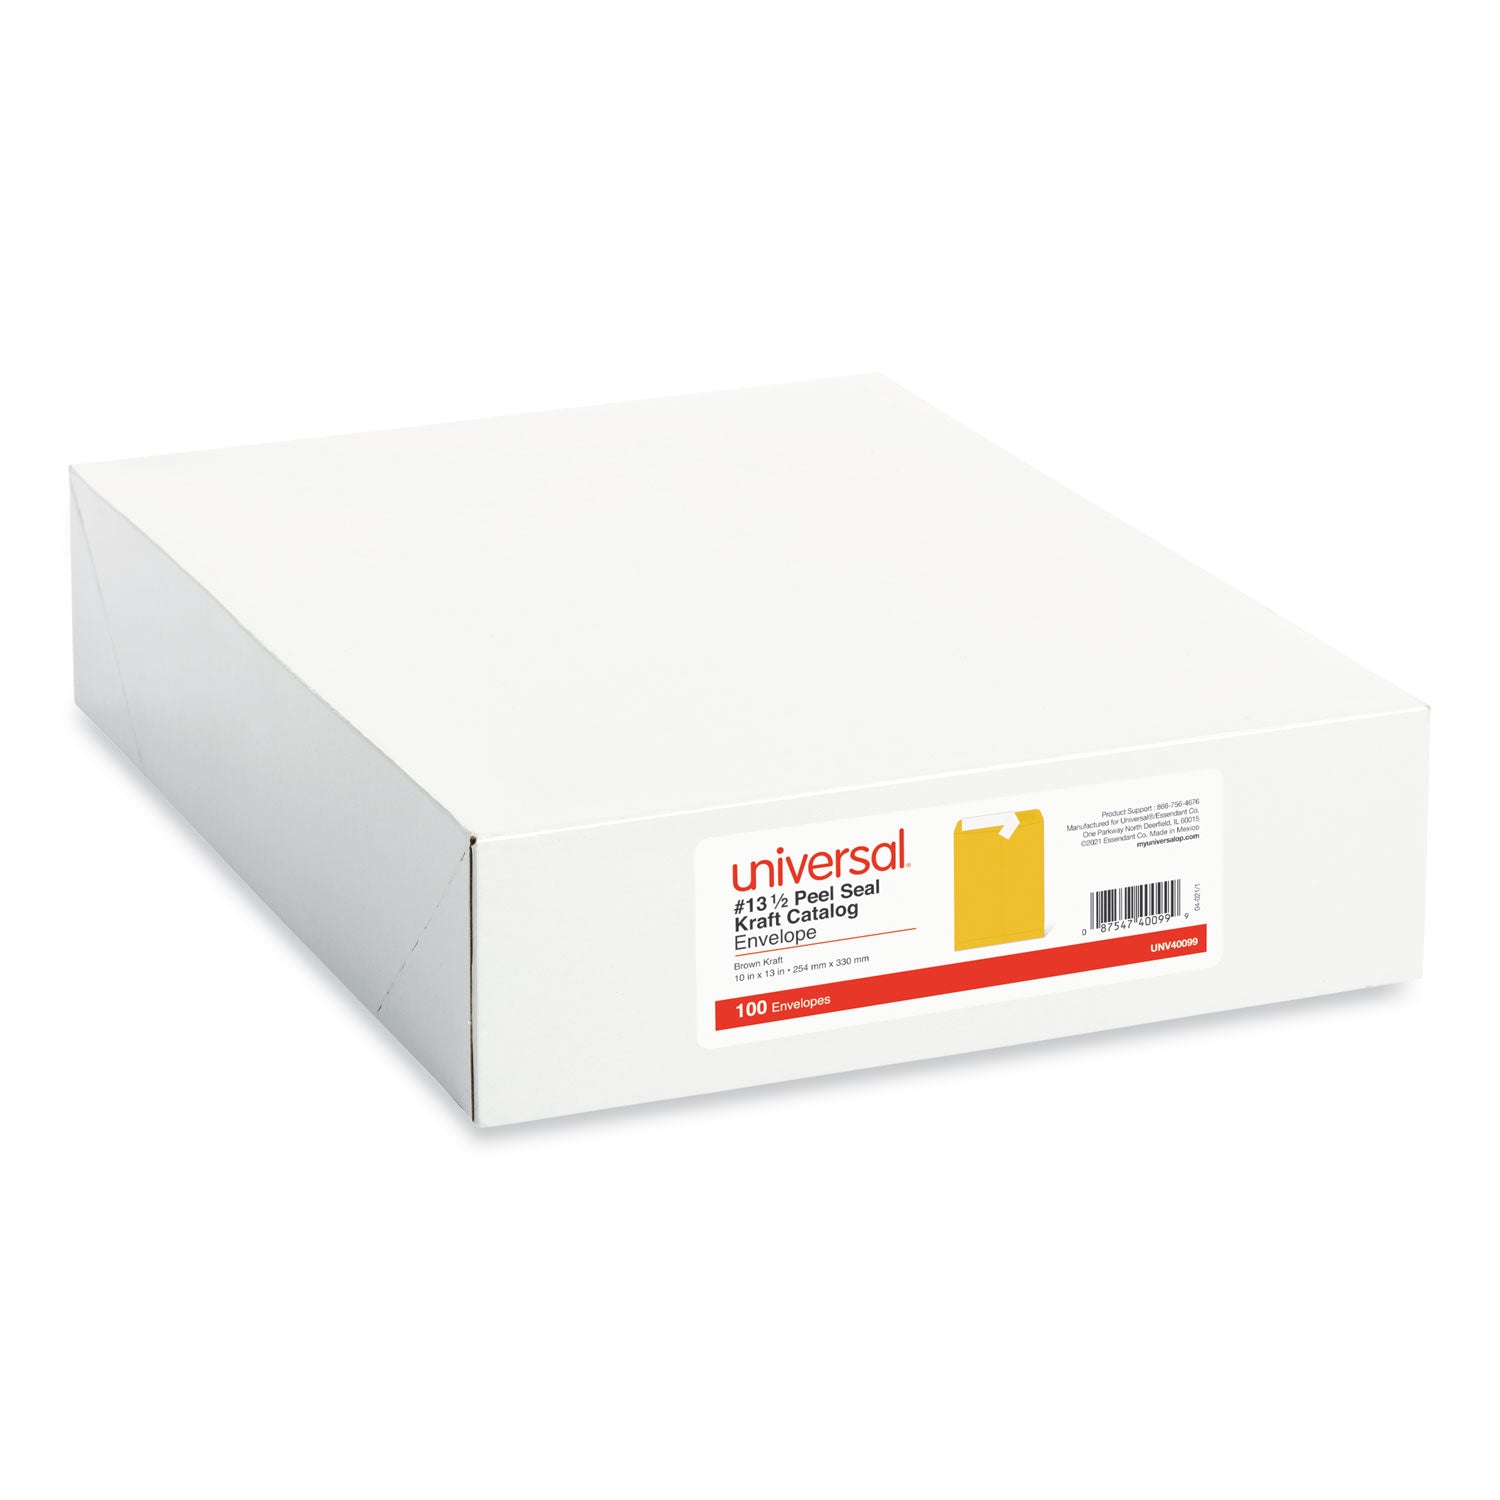 Peel Seal Strip Catalog Envelope, #13 1/2, Square Flap, Self-Adhesive Closure, 10 x 13, Natural Kraft, 100/Box - 